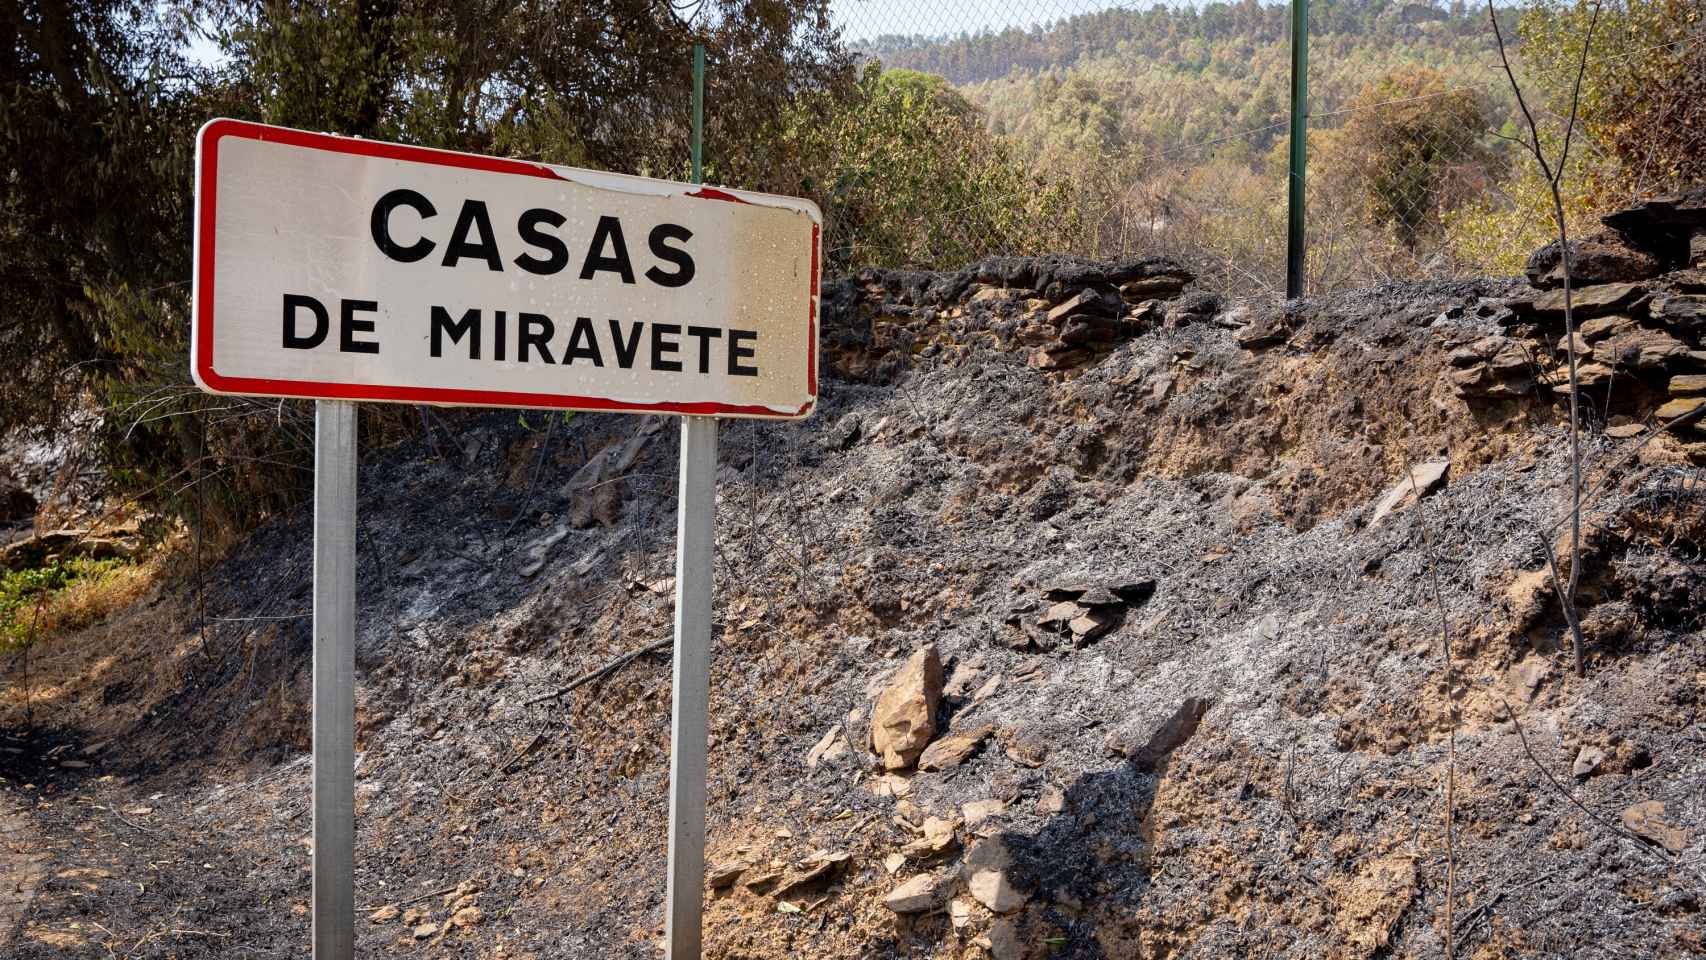 Dejaron arder el pueblo para proteger Monfragüe&quot;: vecinos y ganaderos  increpan a Vara y Sánchez